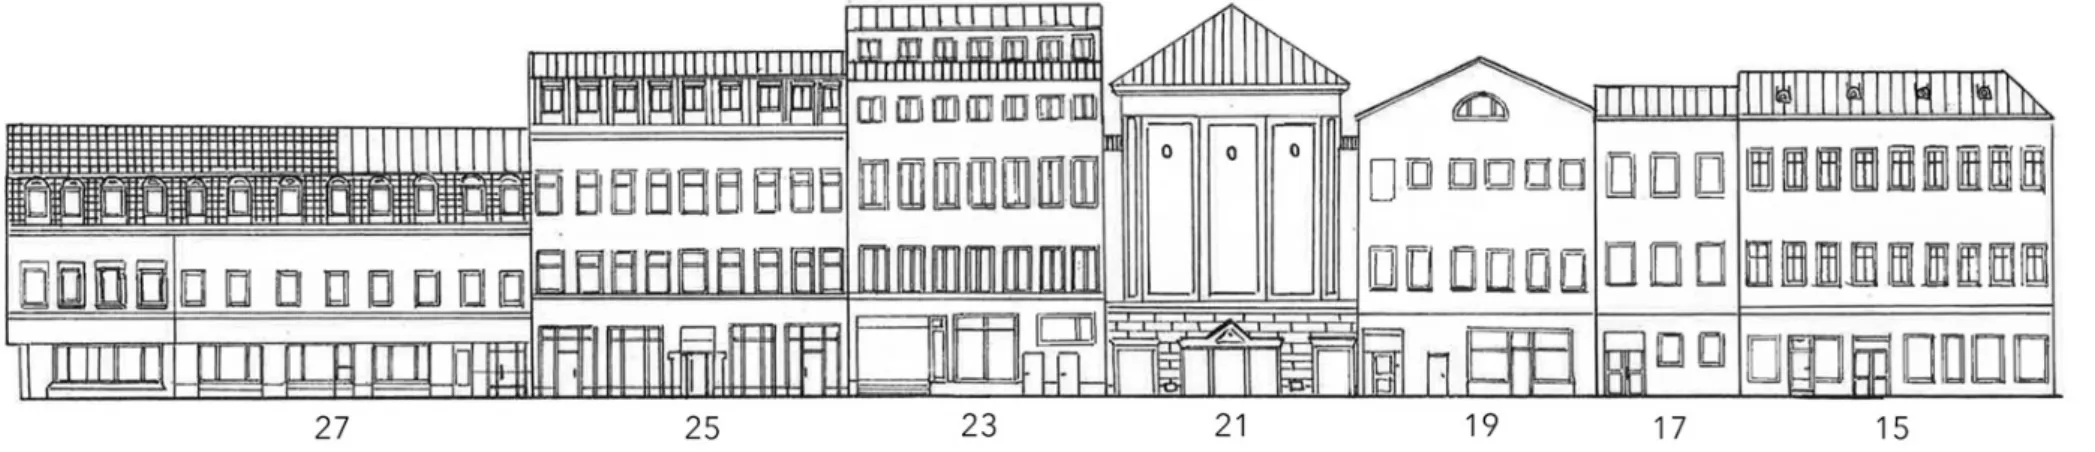 Figur 5. Illustration av fasader Kyrkogatan 15-27 